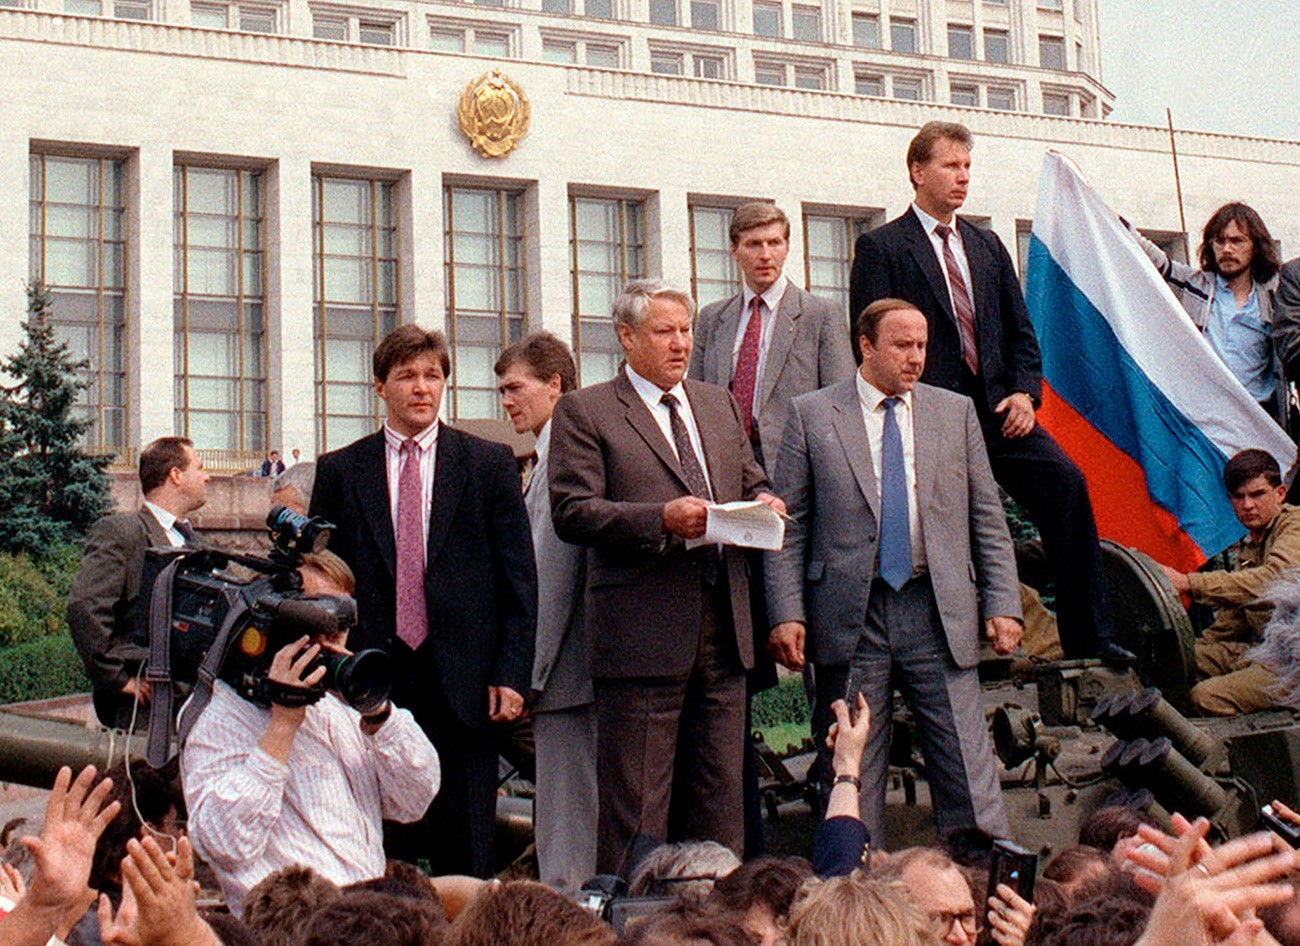 Ruski predsednik Boris Jelcin ima govor na oklepnem vozilu pred vladno zgradbo avgusta 1991